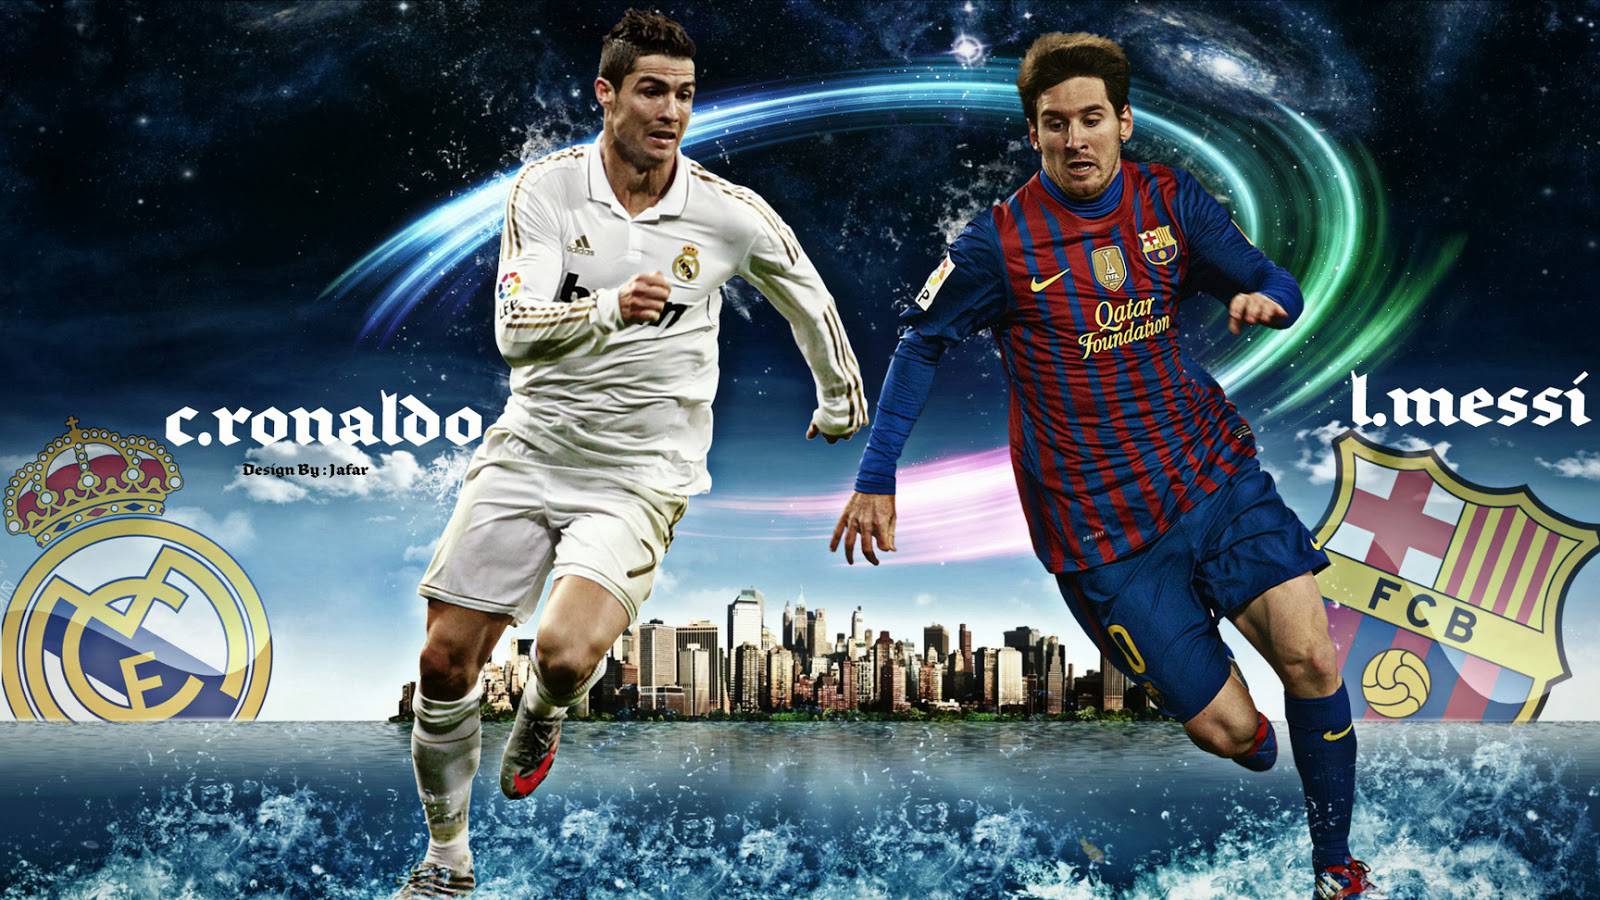 Messi Vs Ronaldo Football Wallpaper - Cristiano Ronaldo Vs Messi 2013 - HD Wallpaper 